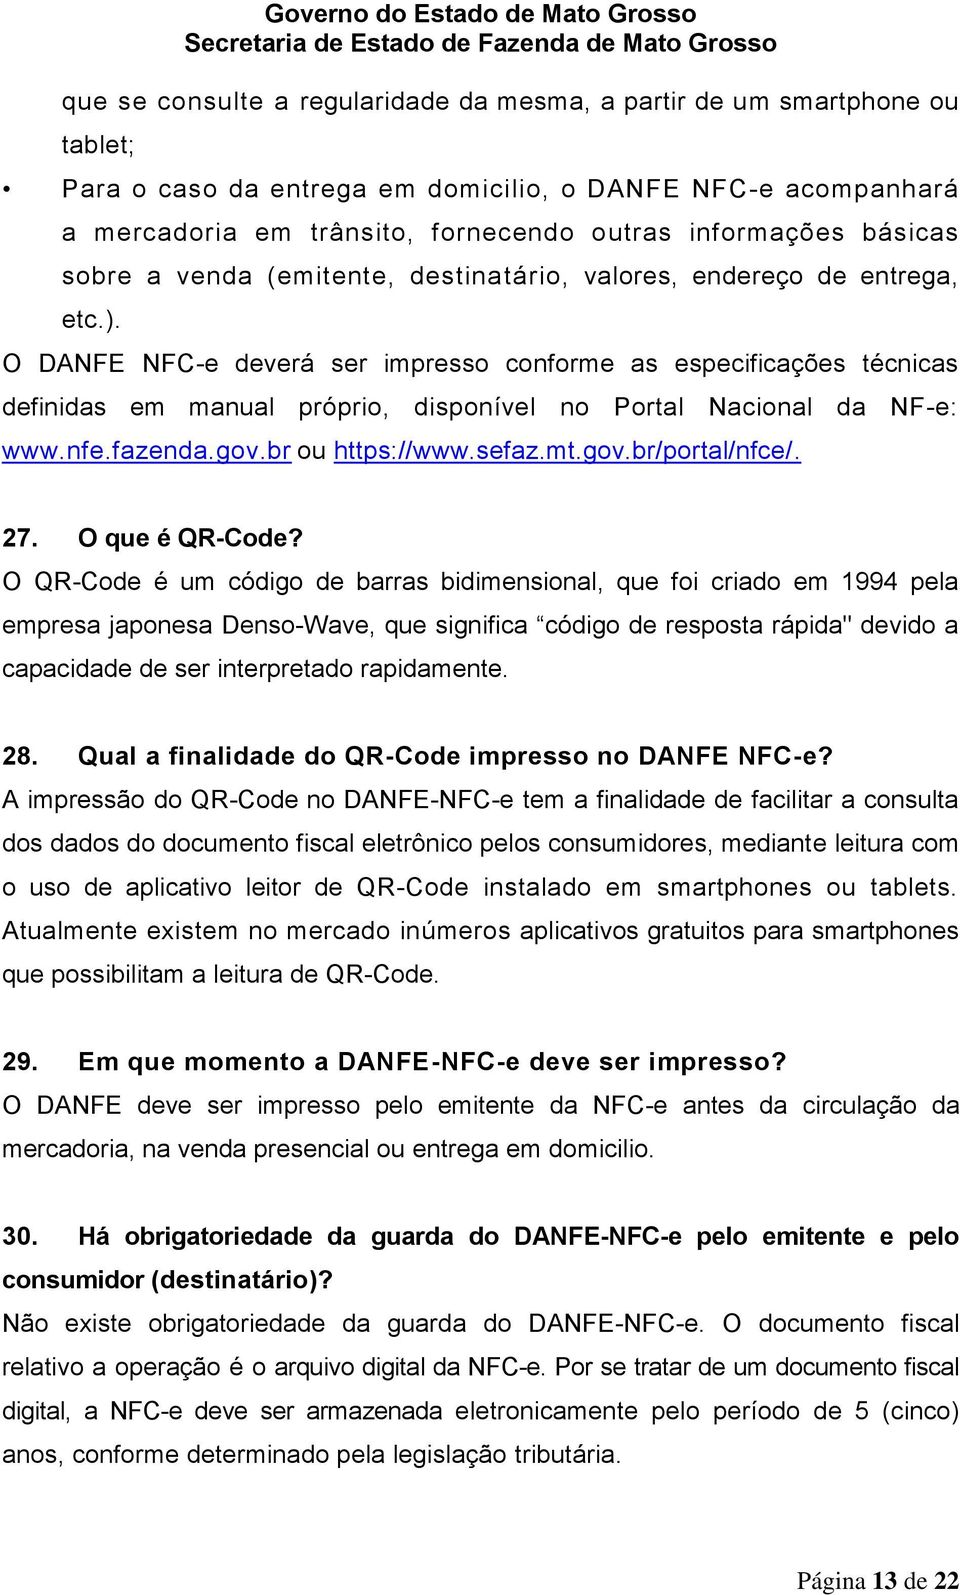 O DANFE NFC-e deverá ser impresso conforme as especificações técnicas definidas em manual próprio, disponível no Portal Nacional da NF-e: www.nfe.fazenda.gov.br ou https://www.sefaz.mt.gov.br/portal/nfce/.